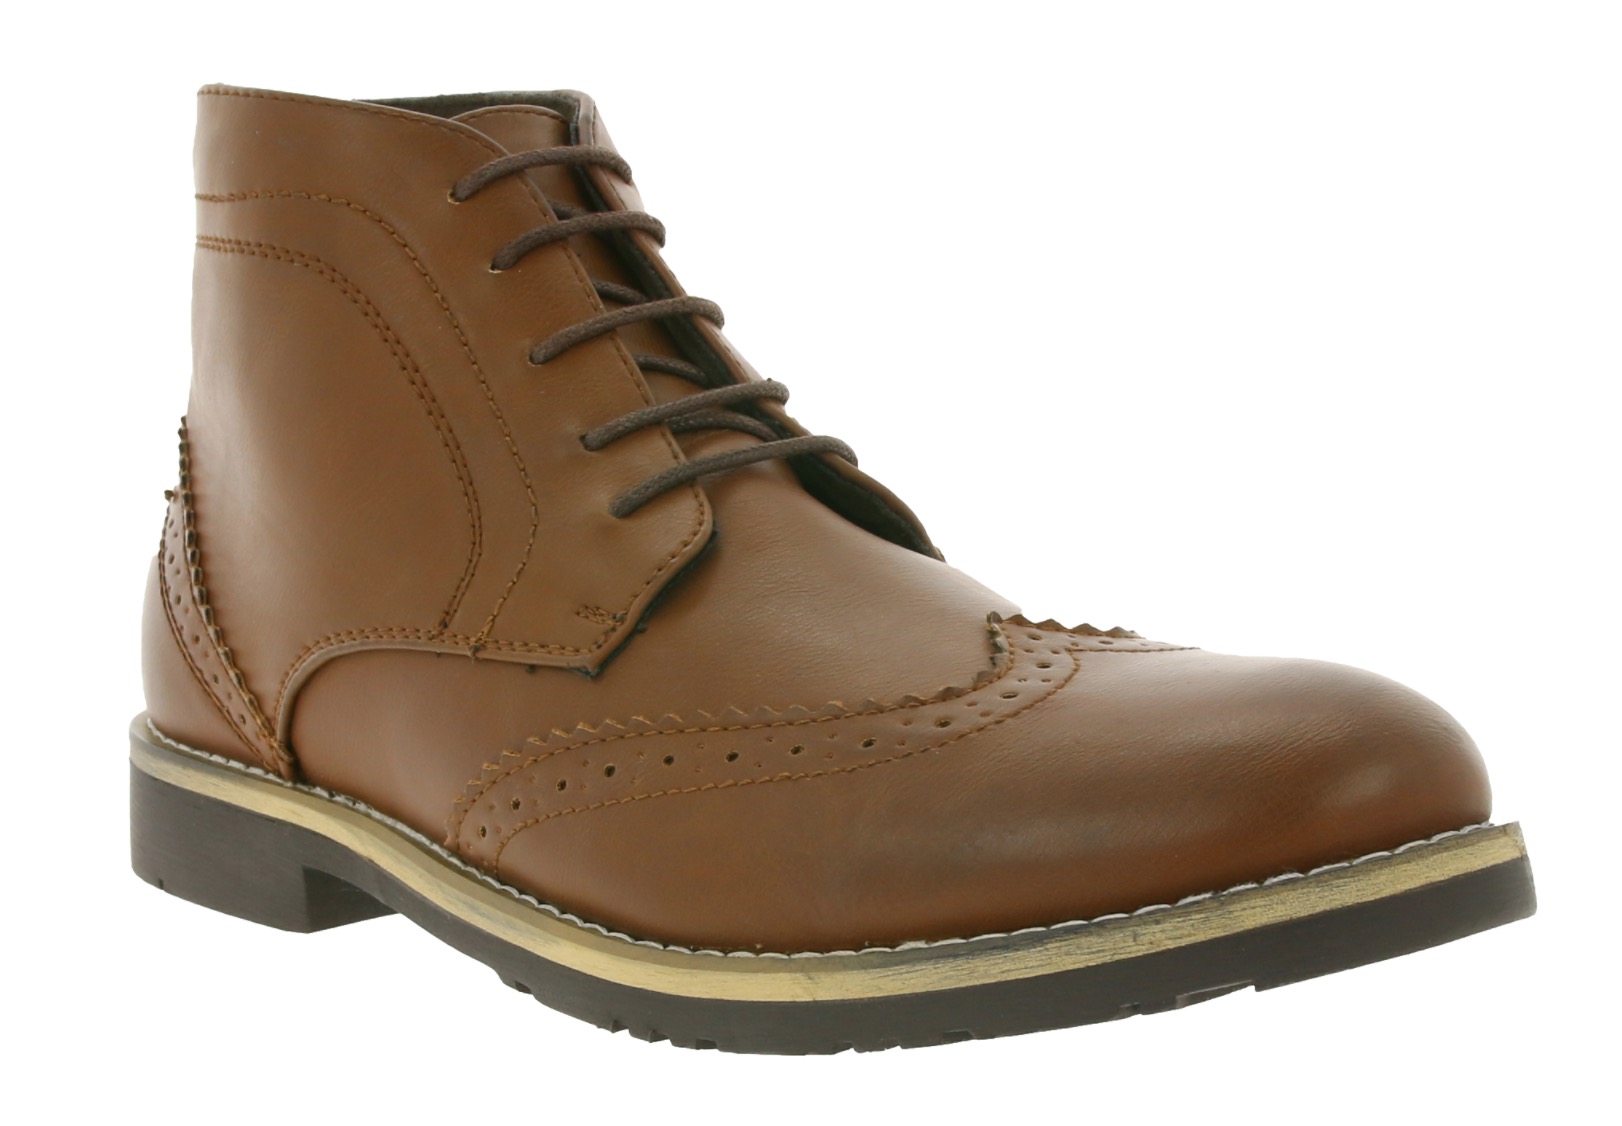 Cedar Wood Vintage Herren Boots für nur 12,99 Euro inkl. Versand